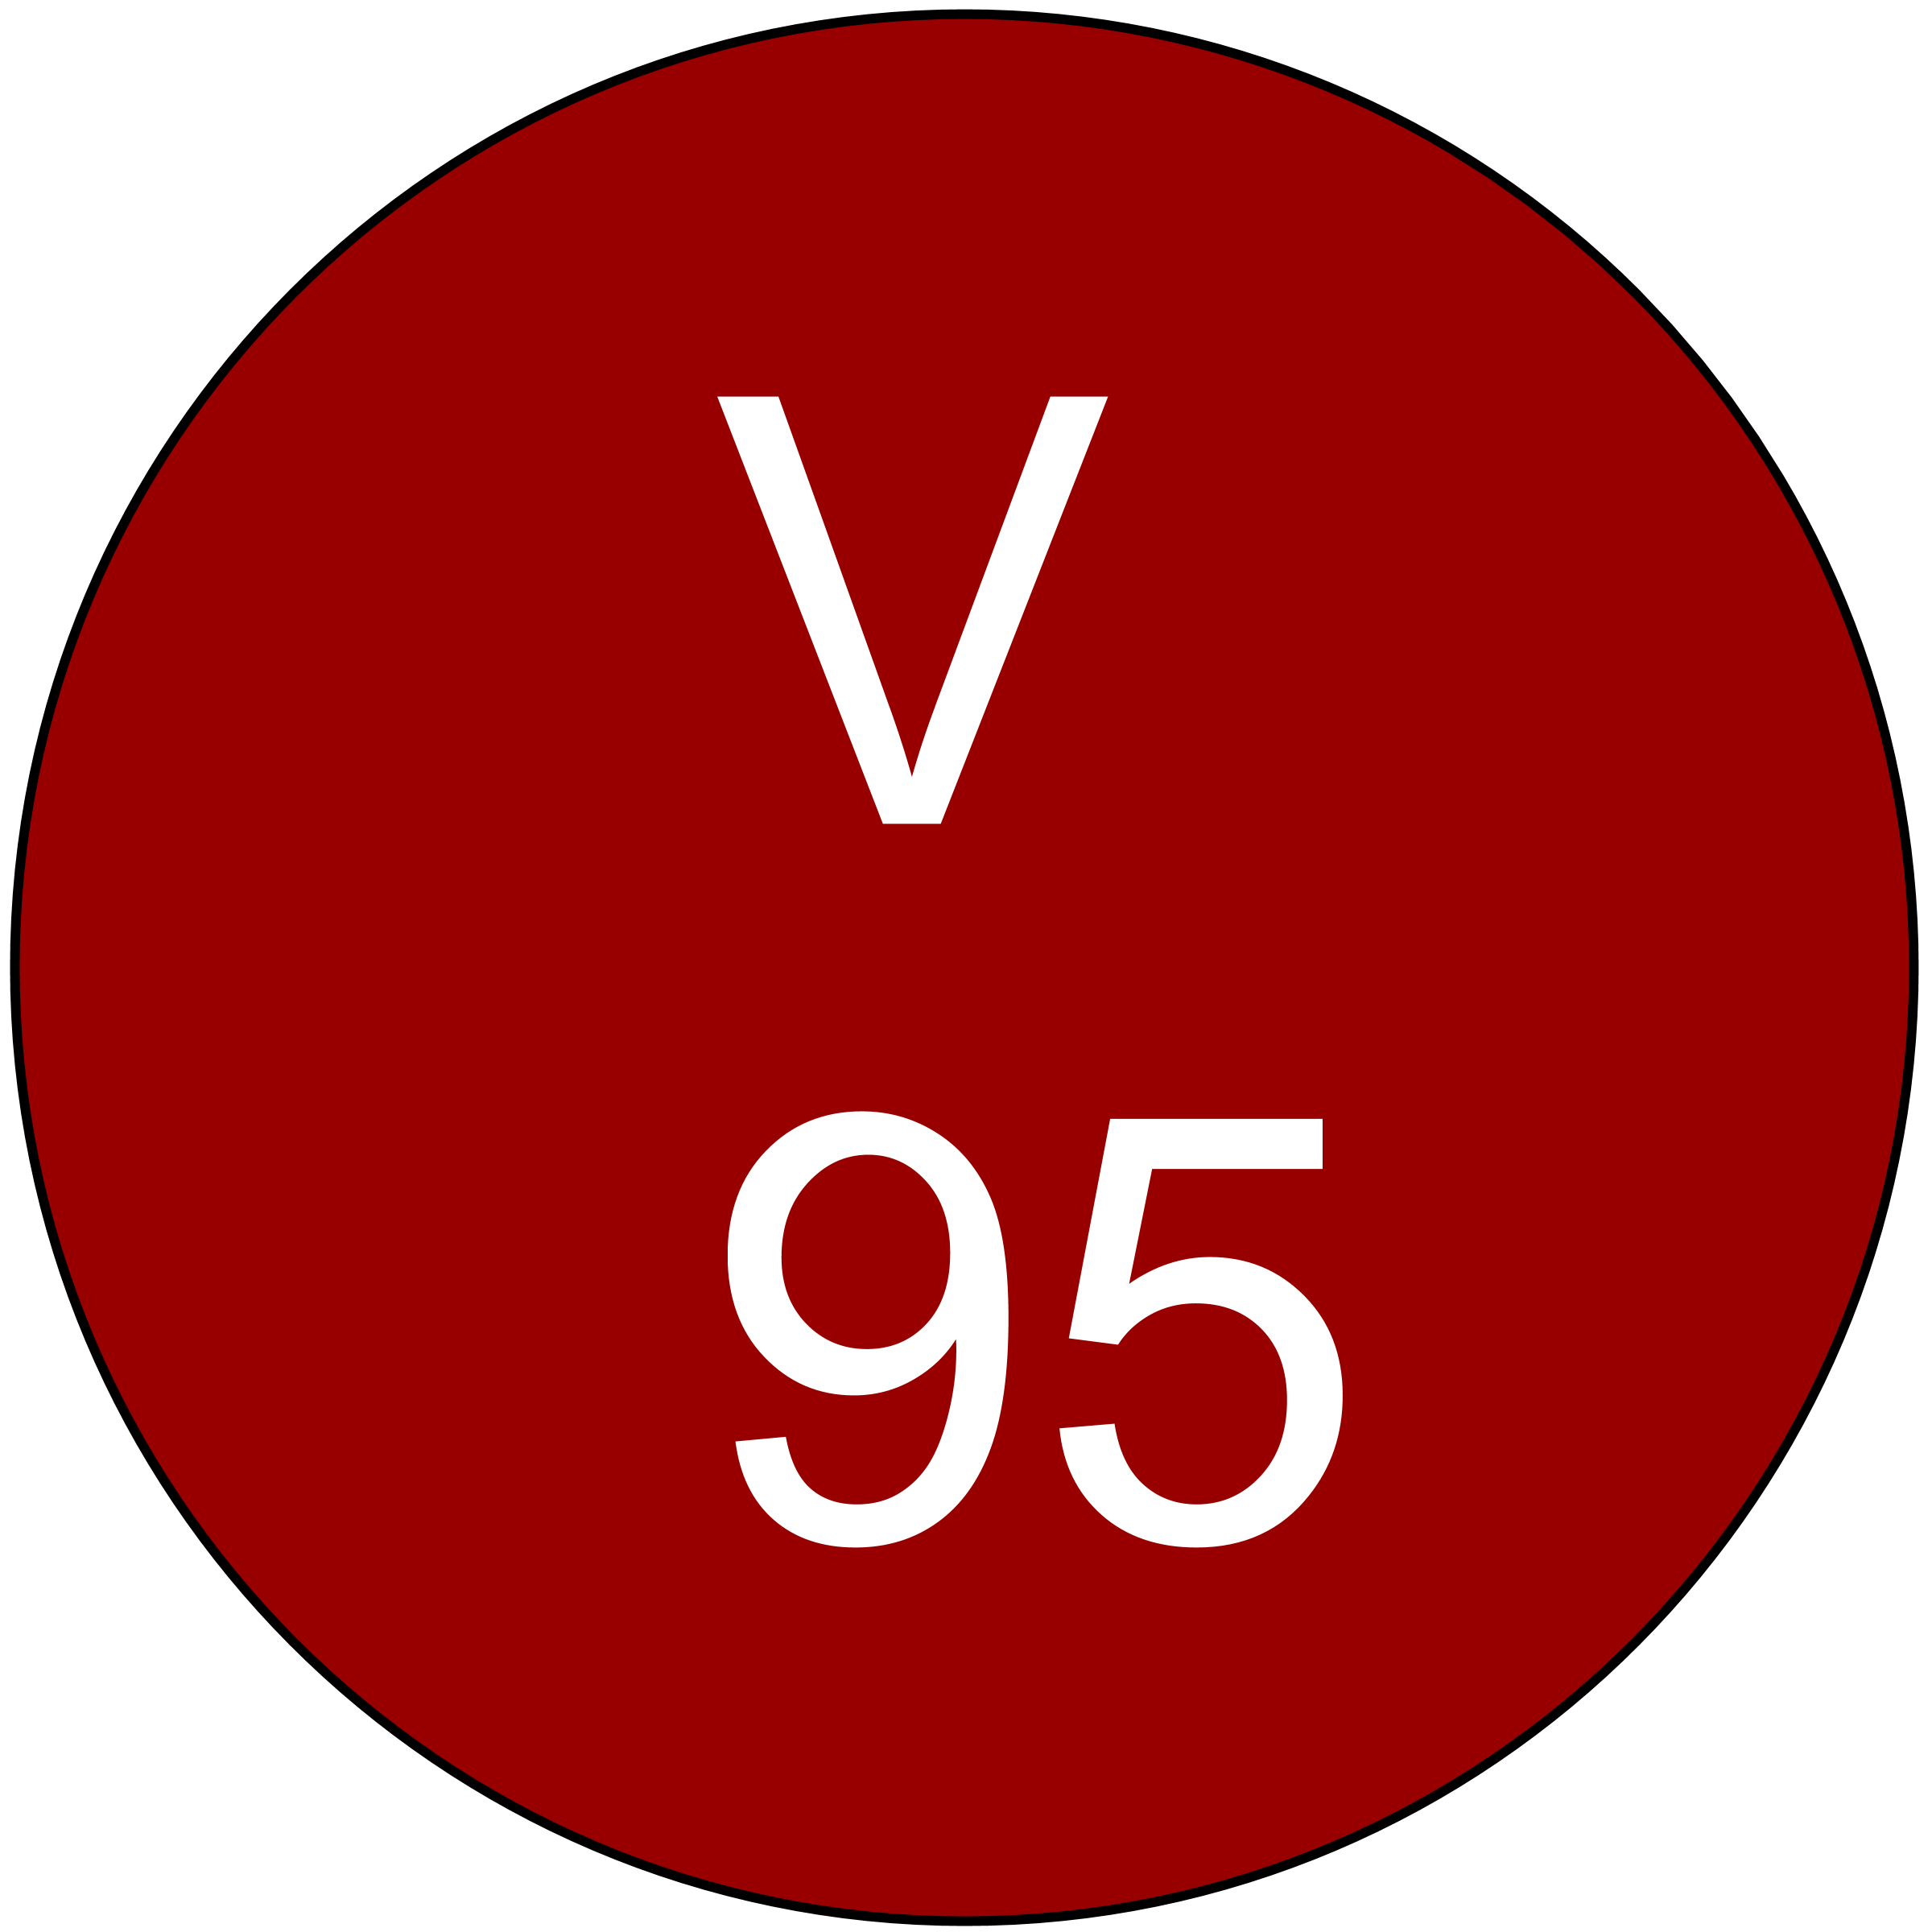 vinous-95-ratings